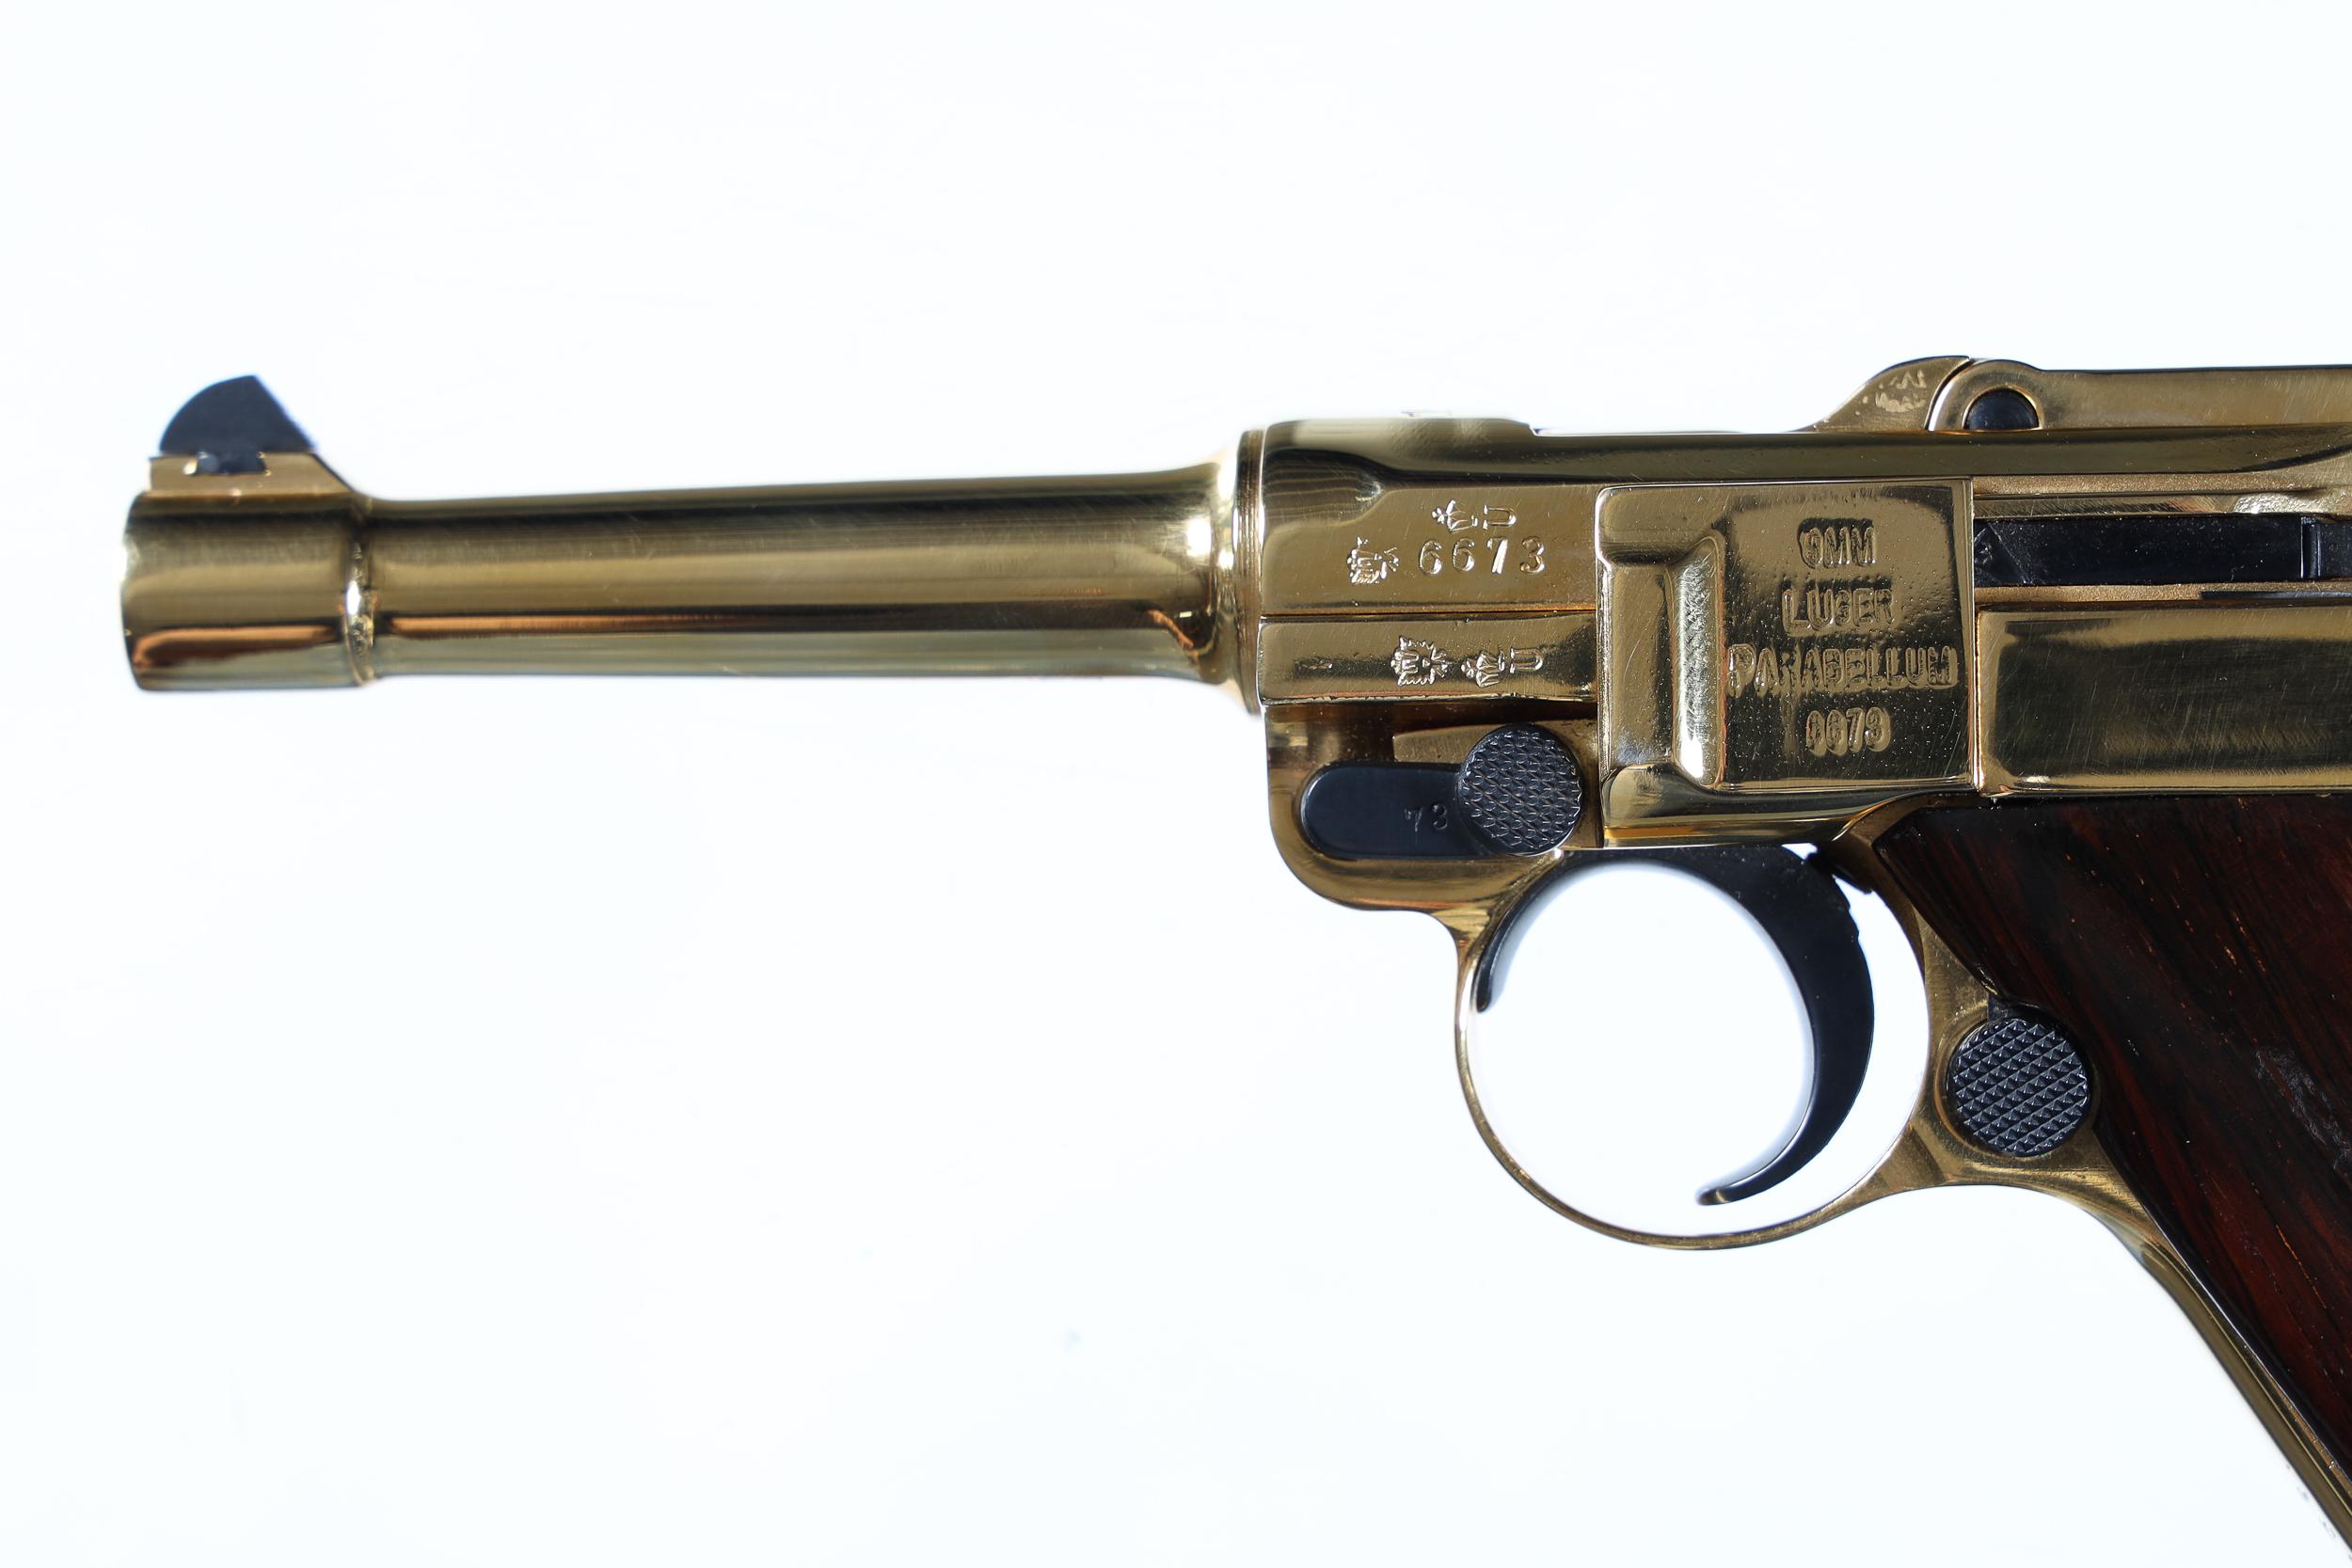 DWM Luger Pistol 9mm